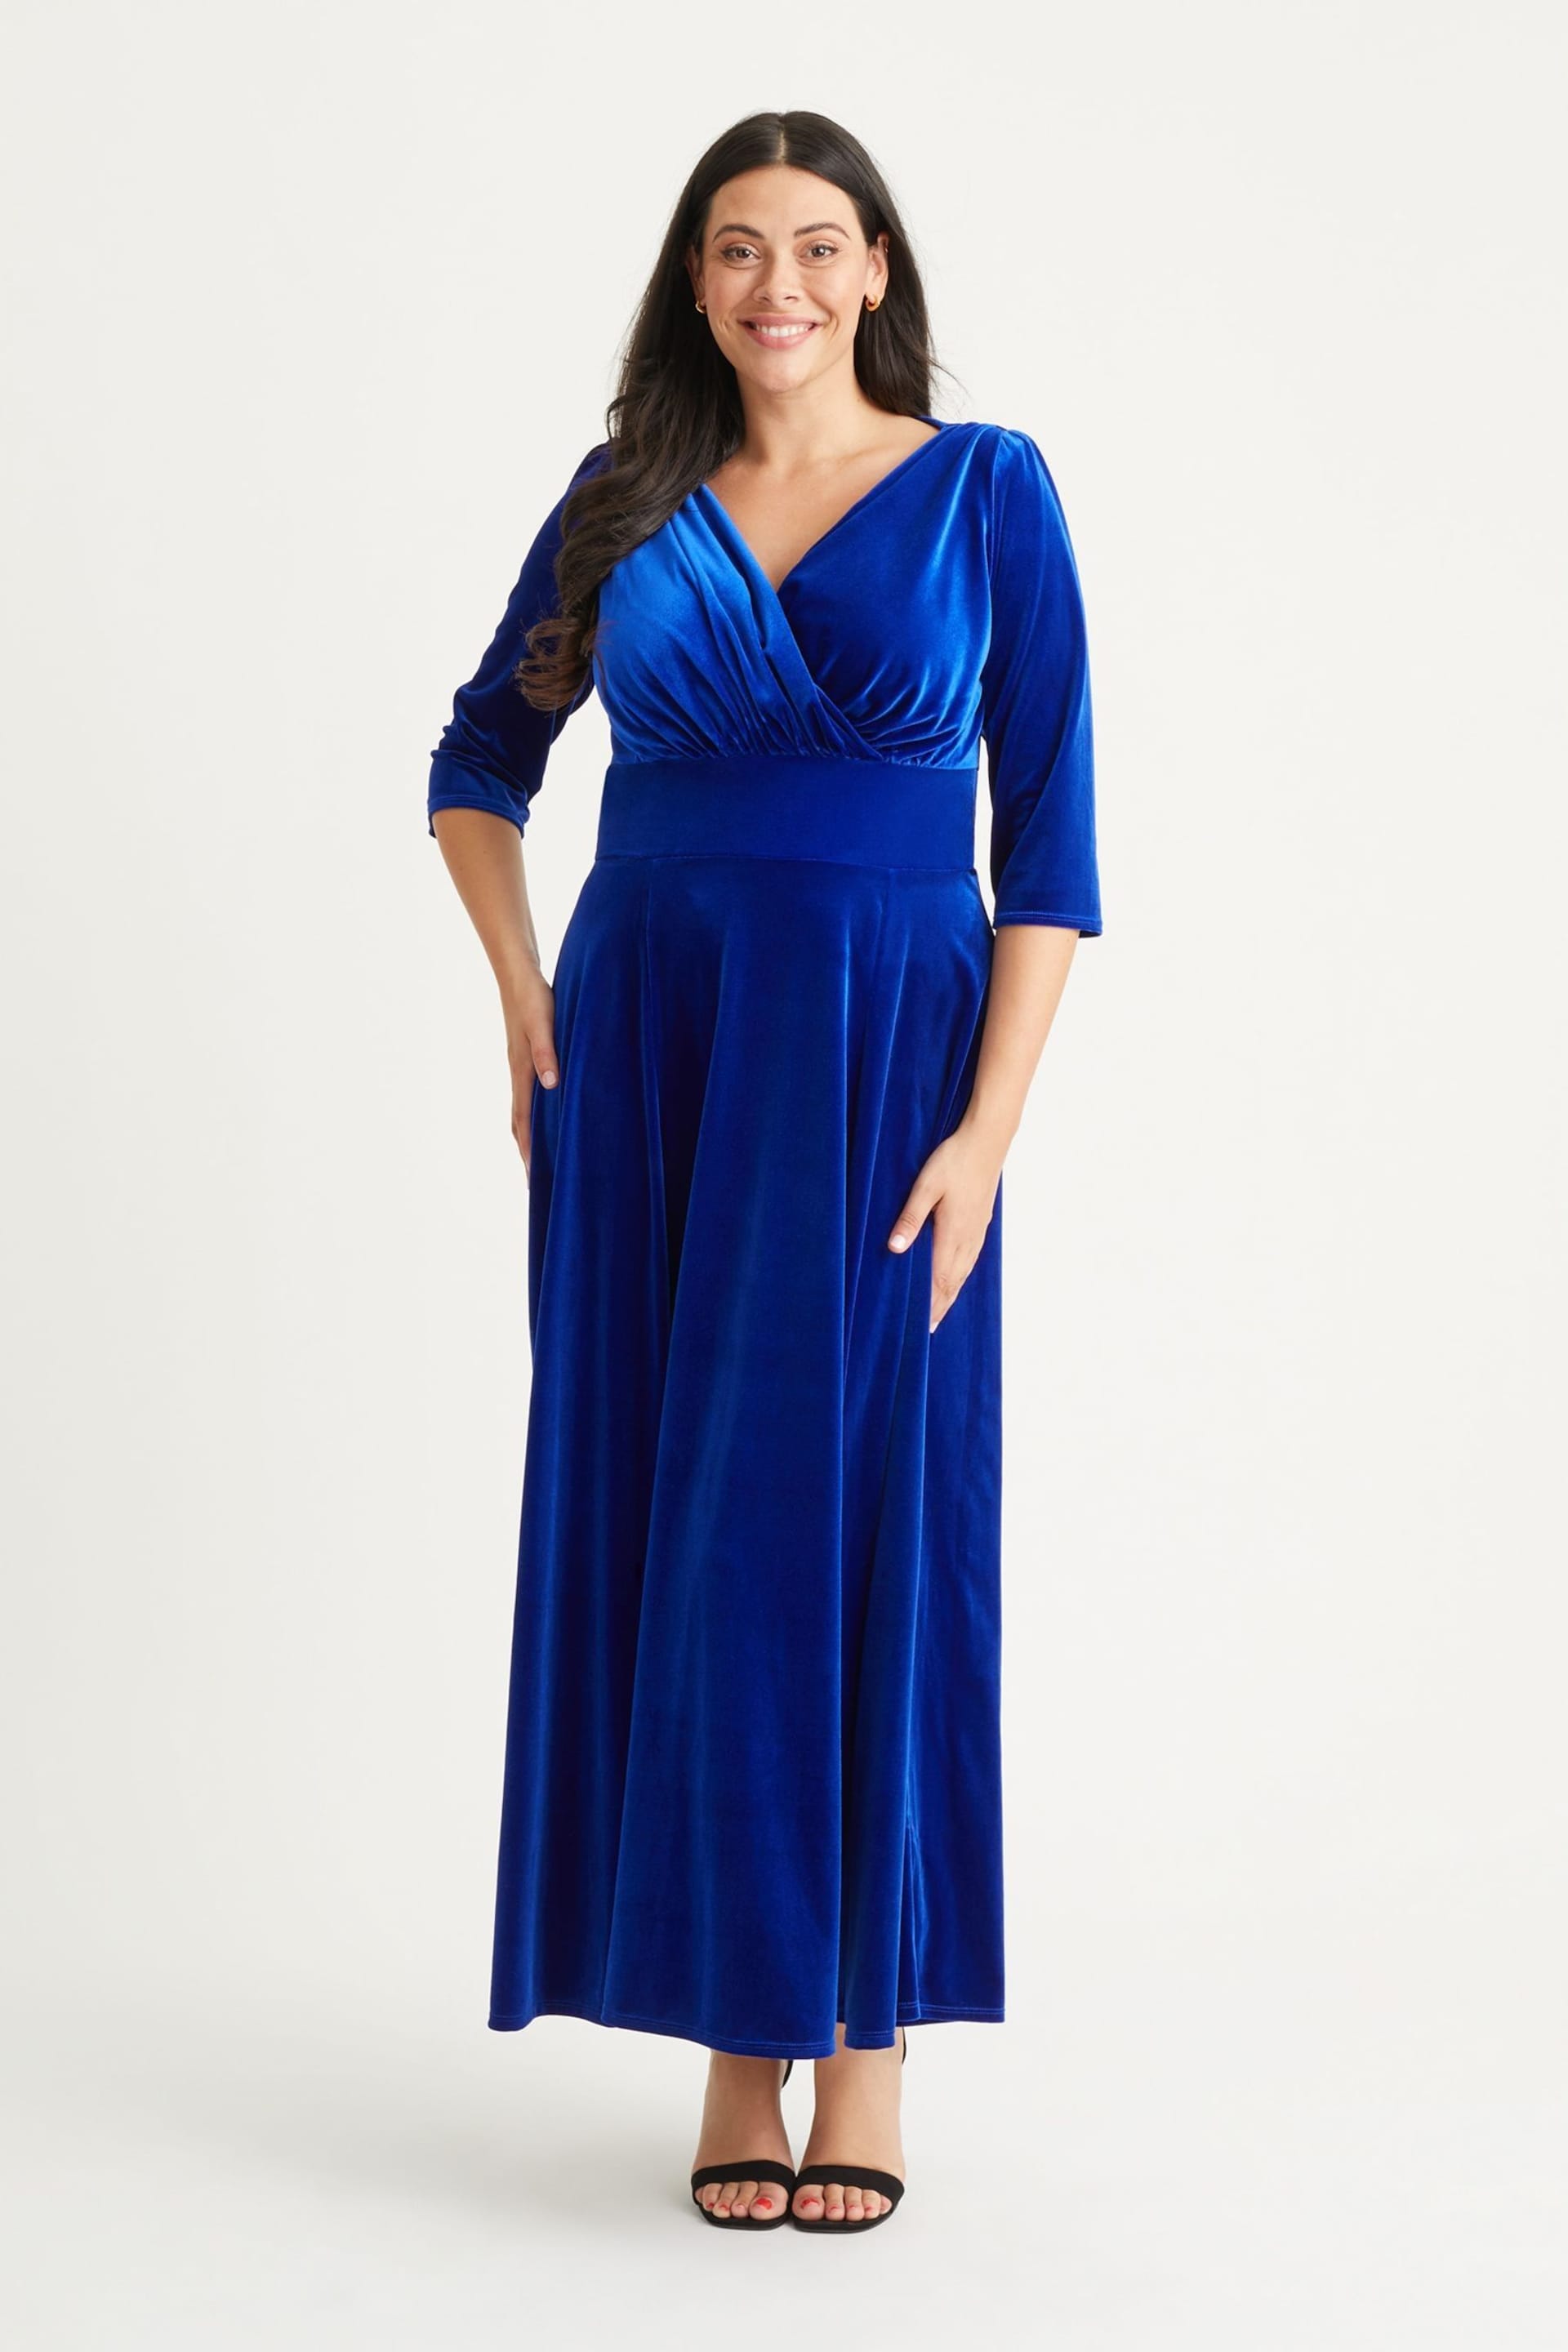 Scarlett & Jo Blue Verity Velvet Maxi Gown - Image 5 of 5